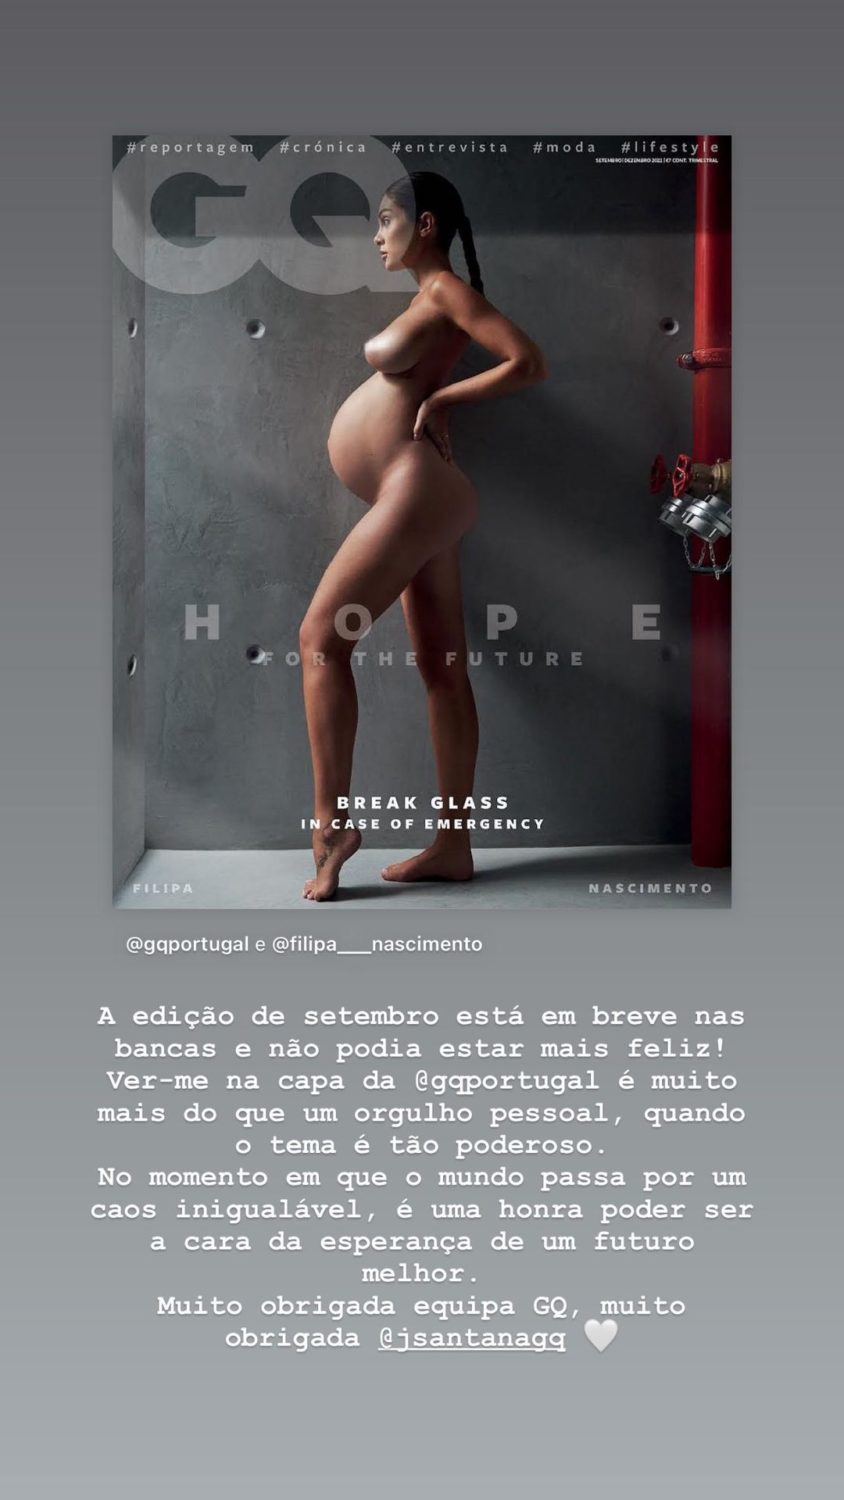 Prestes a ser mãe, Filipa Nascimento posa nua para capa de revista e assume: “É uma honra…”